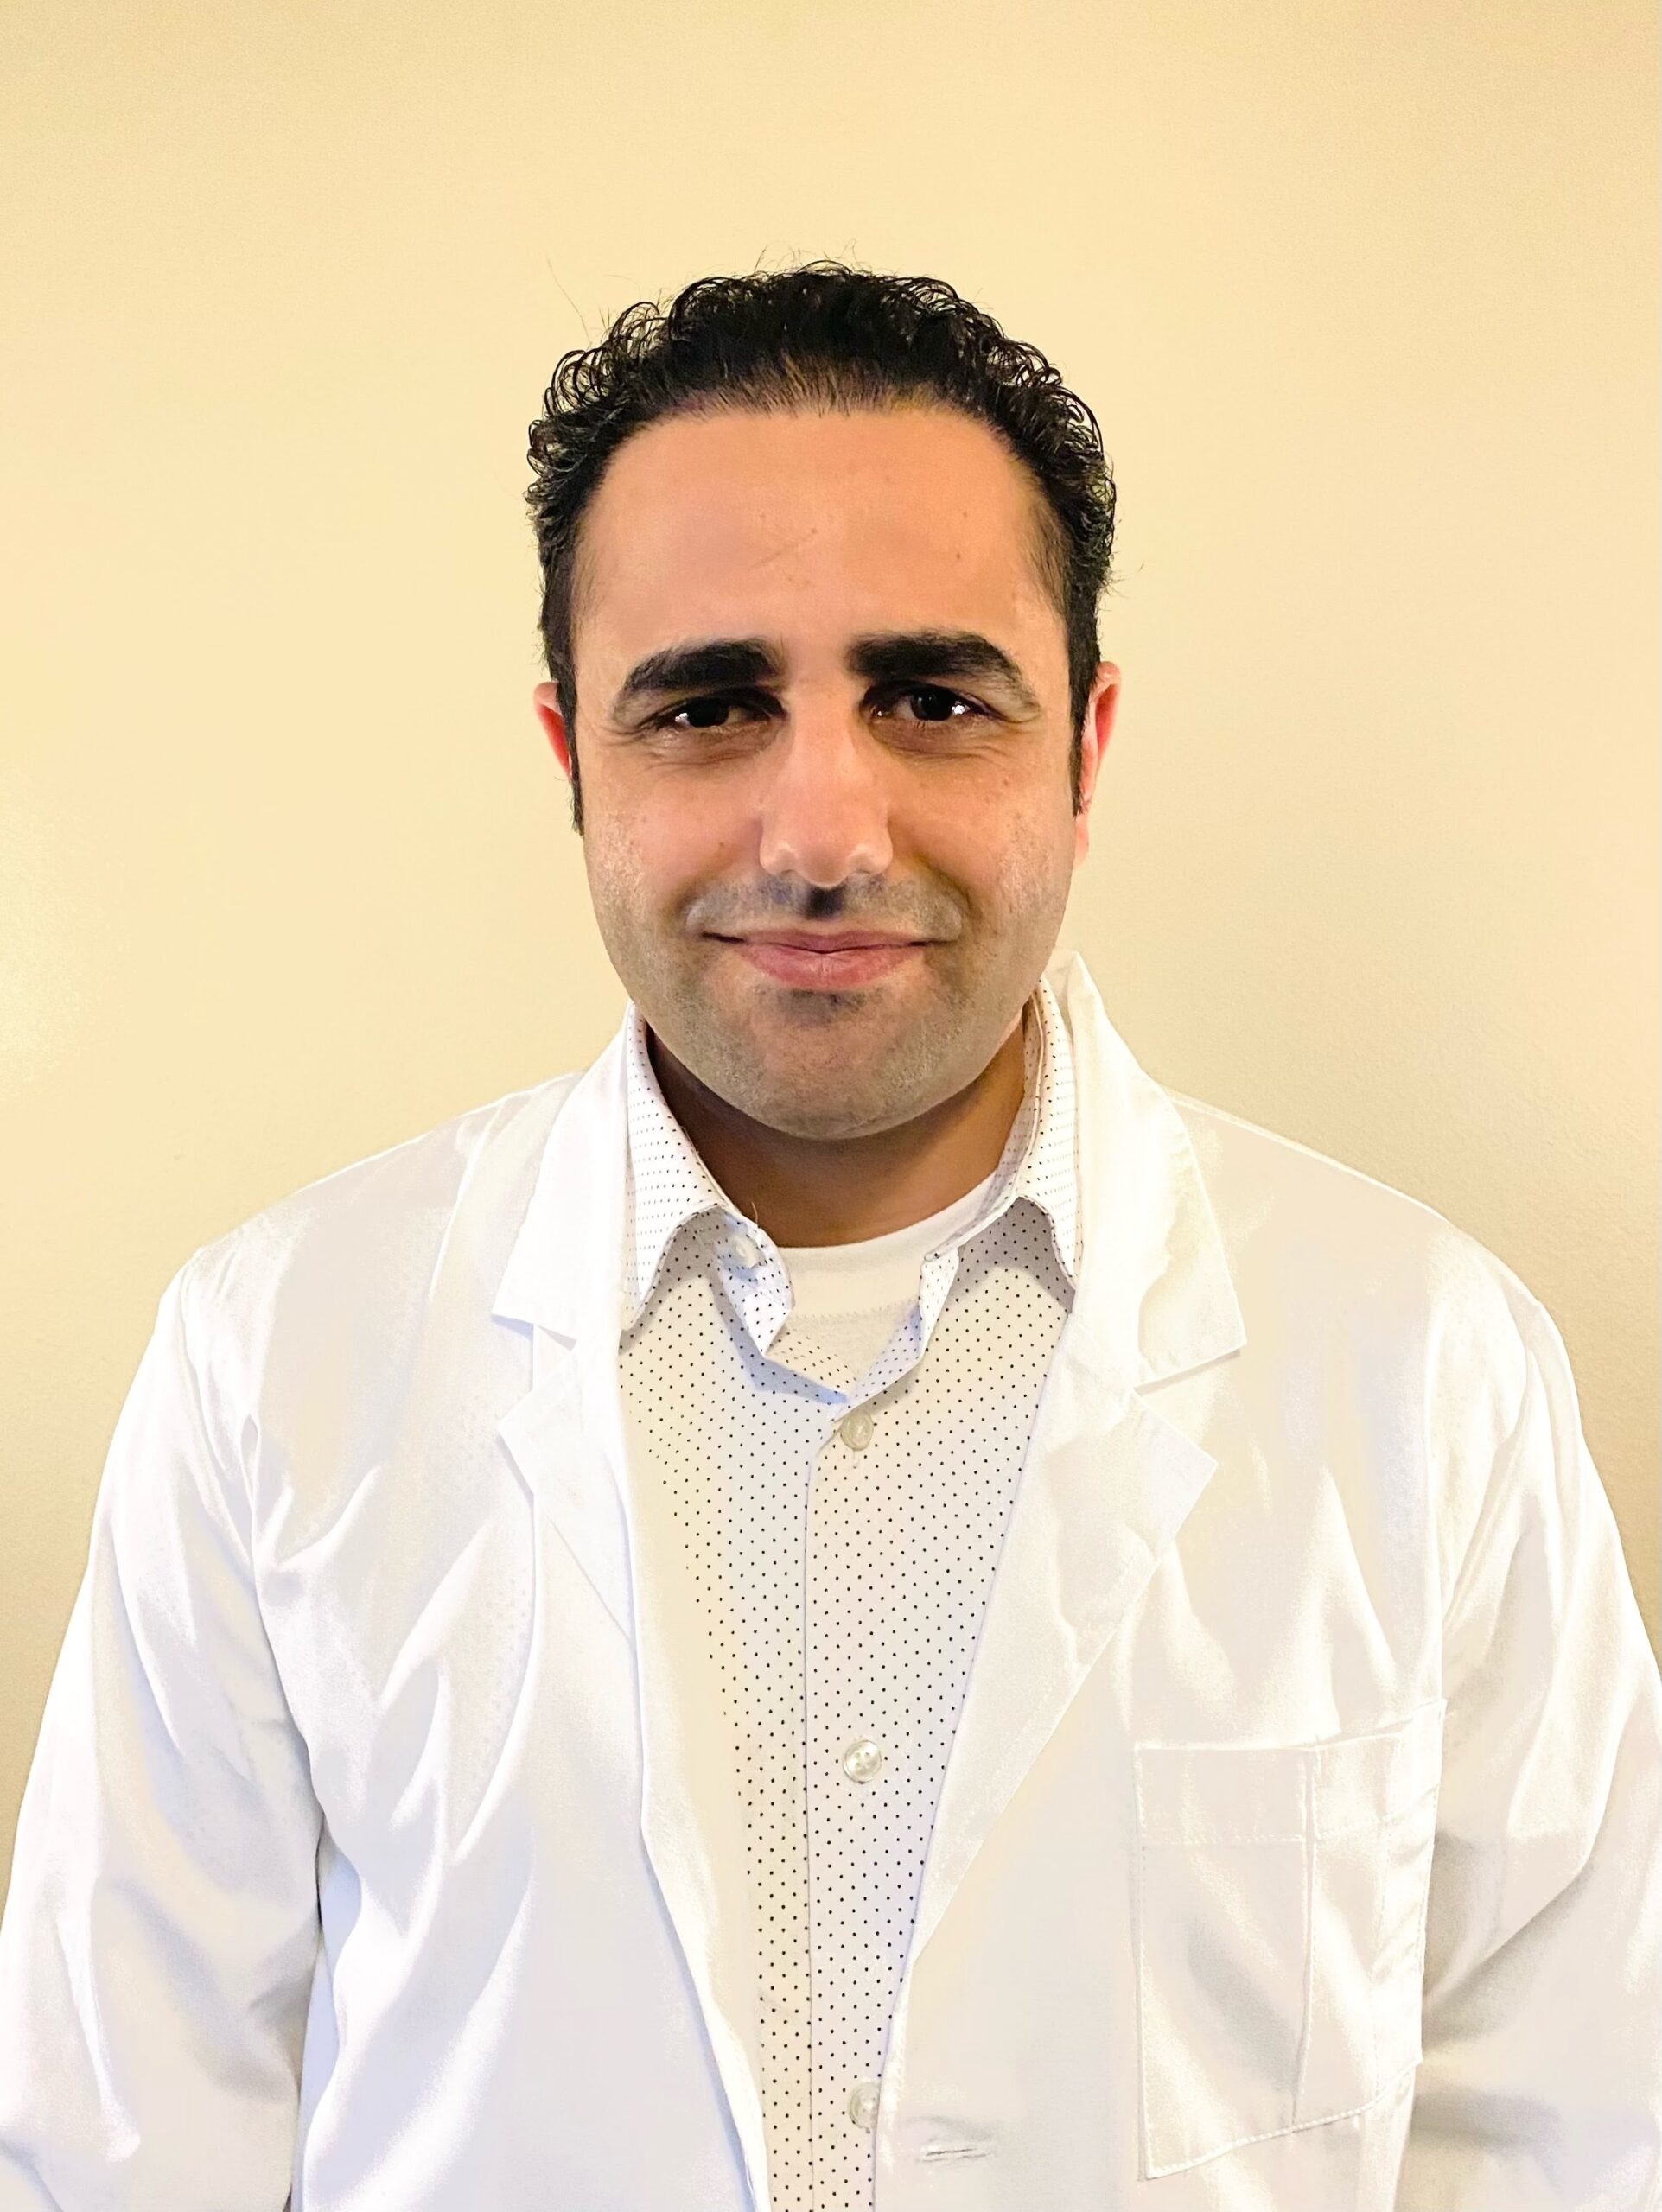 Samir-Hamed-Corona-Psychiatric-Nurse-Practitioner